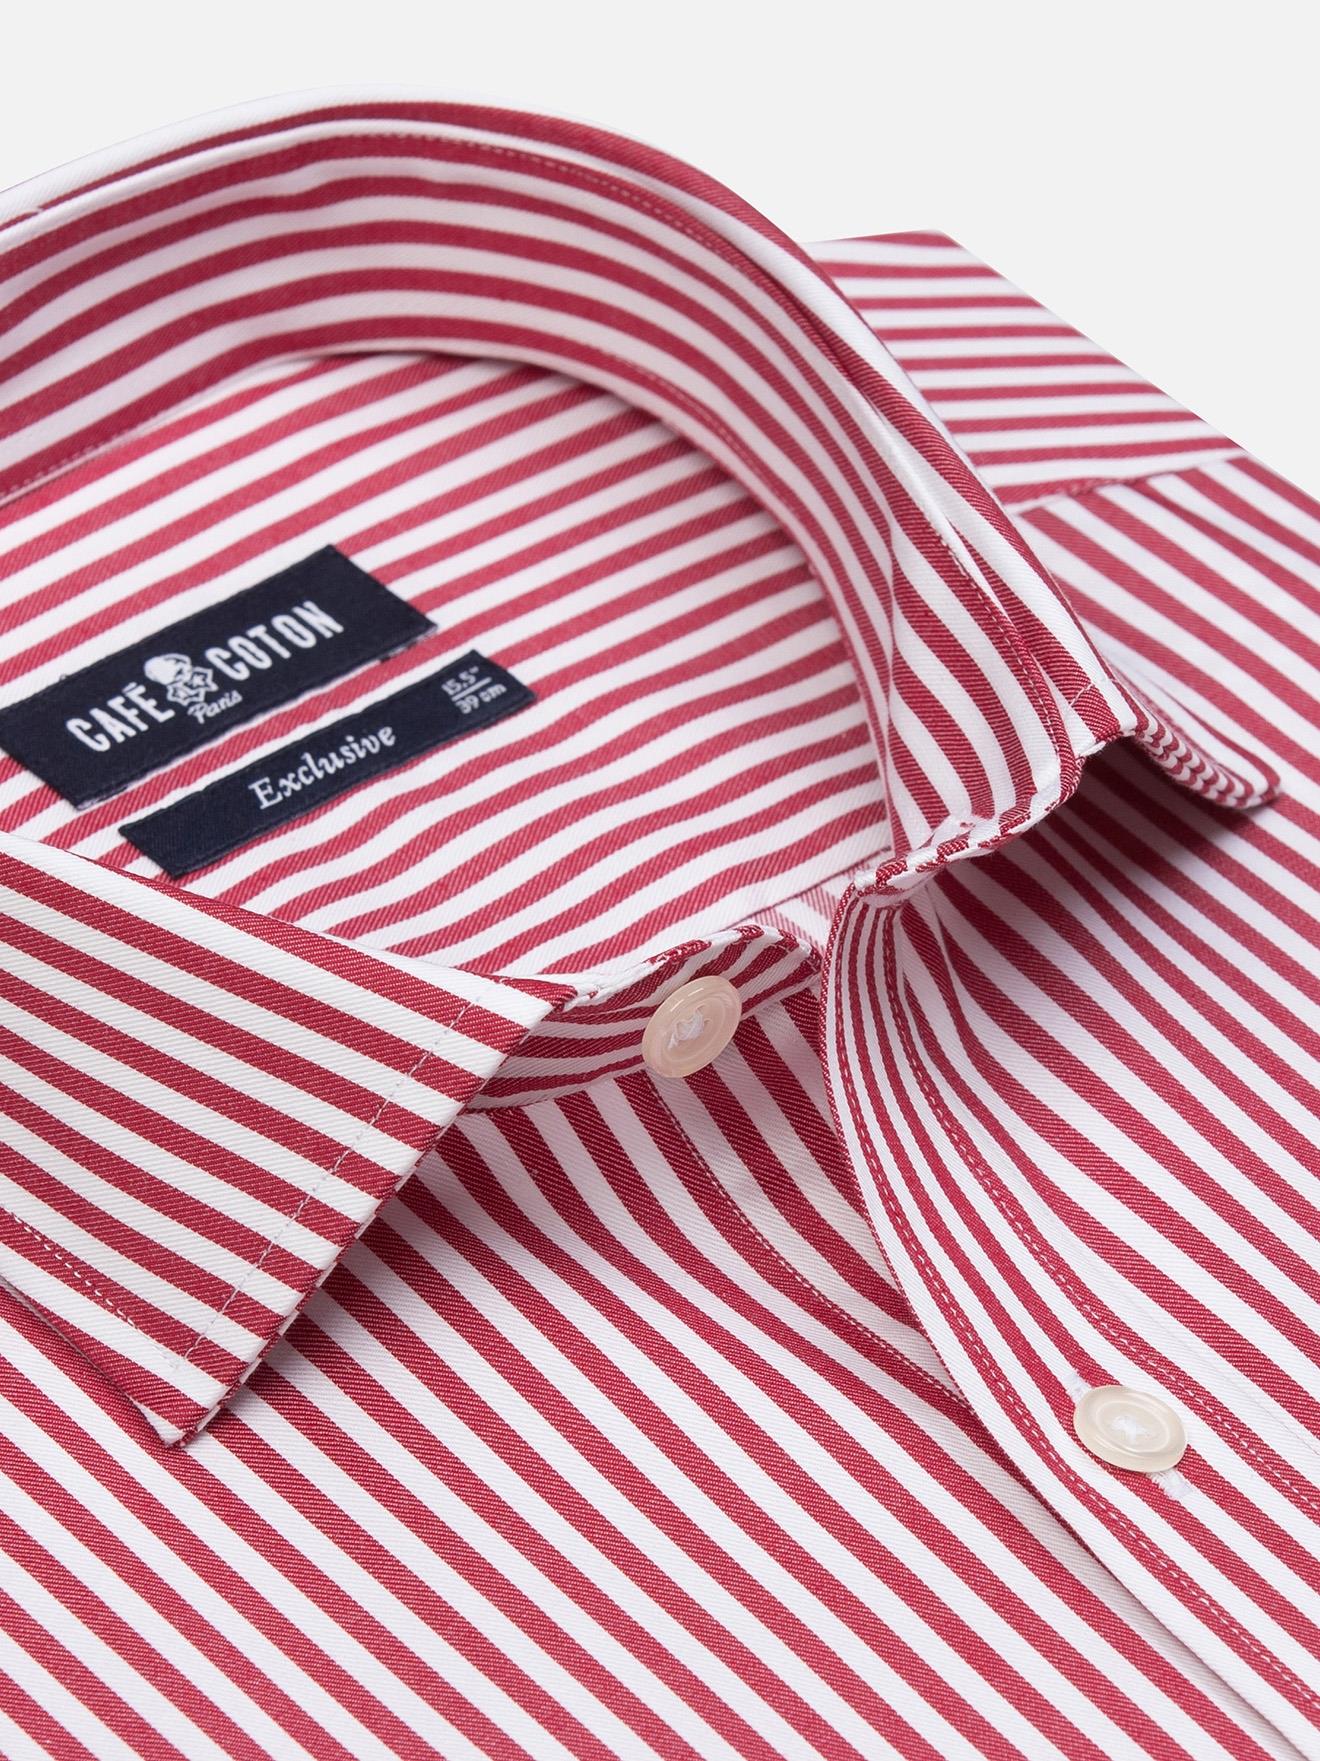 Hemd Nick rot gestreift für Hemden 4 AUSVERKAUF 119€ : 